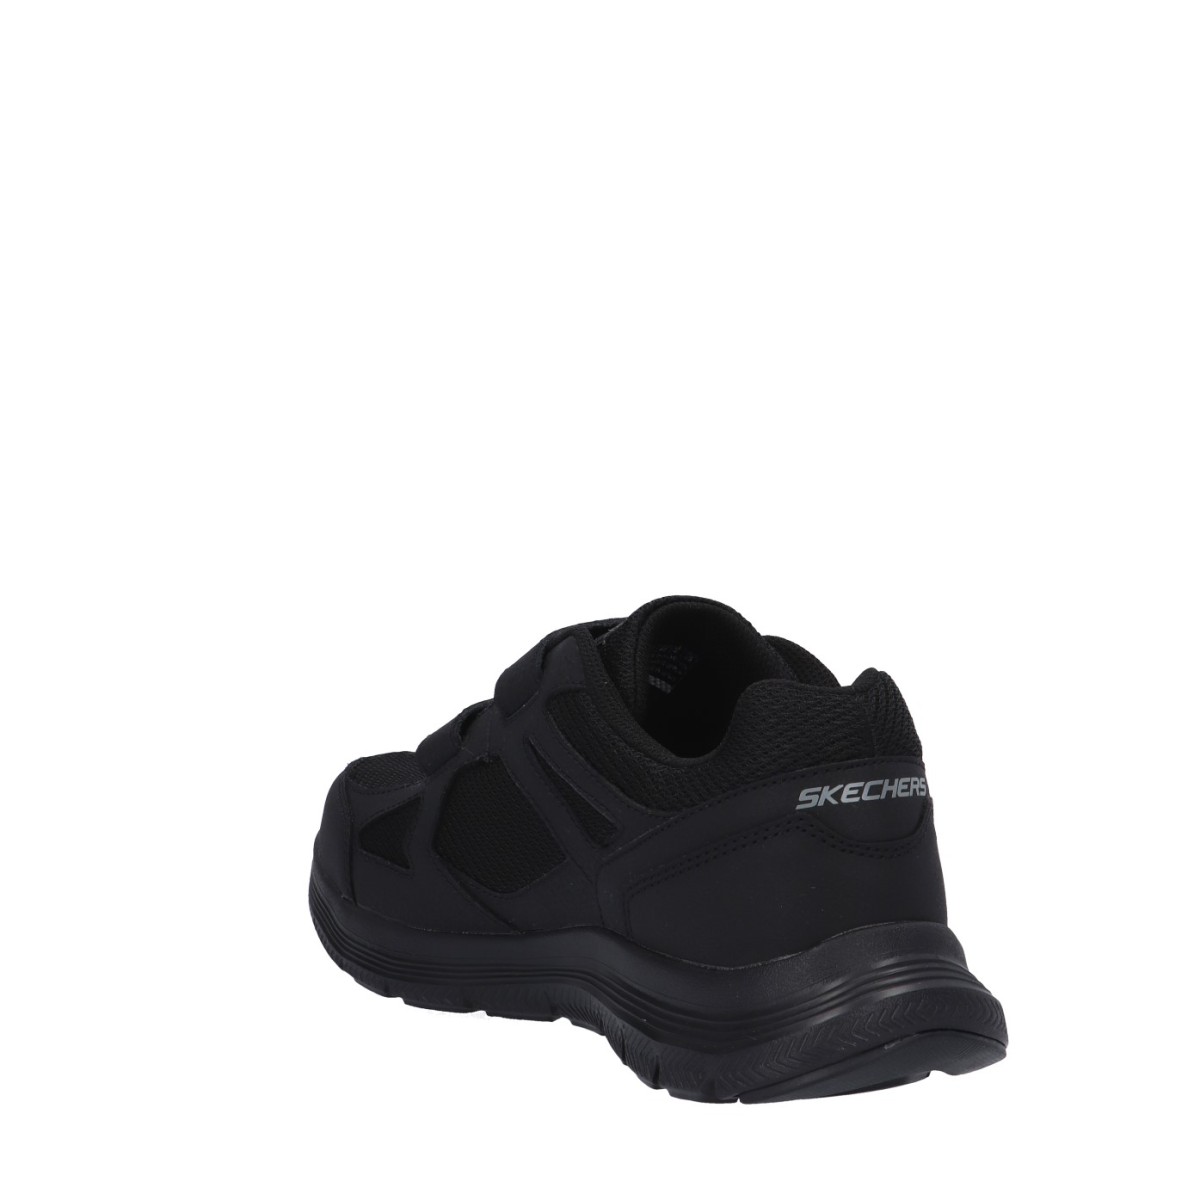 Skechers Sneaker strappo Nero Gomma 232578